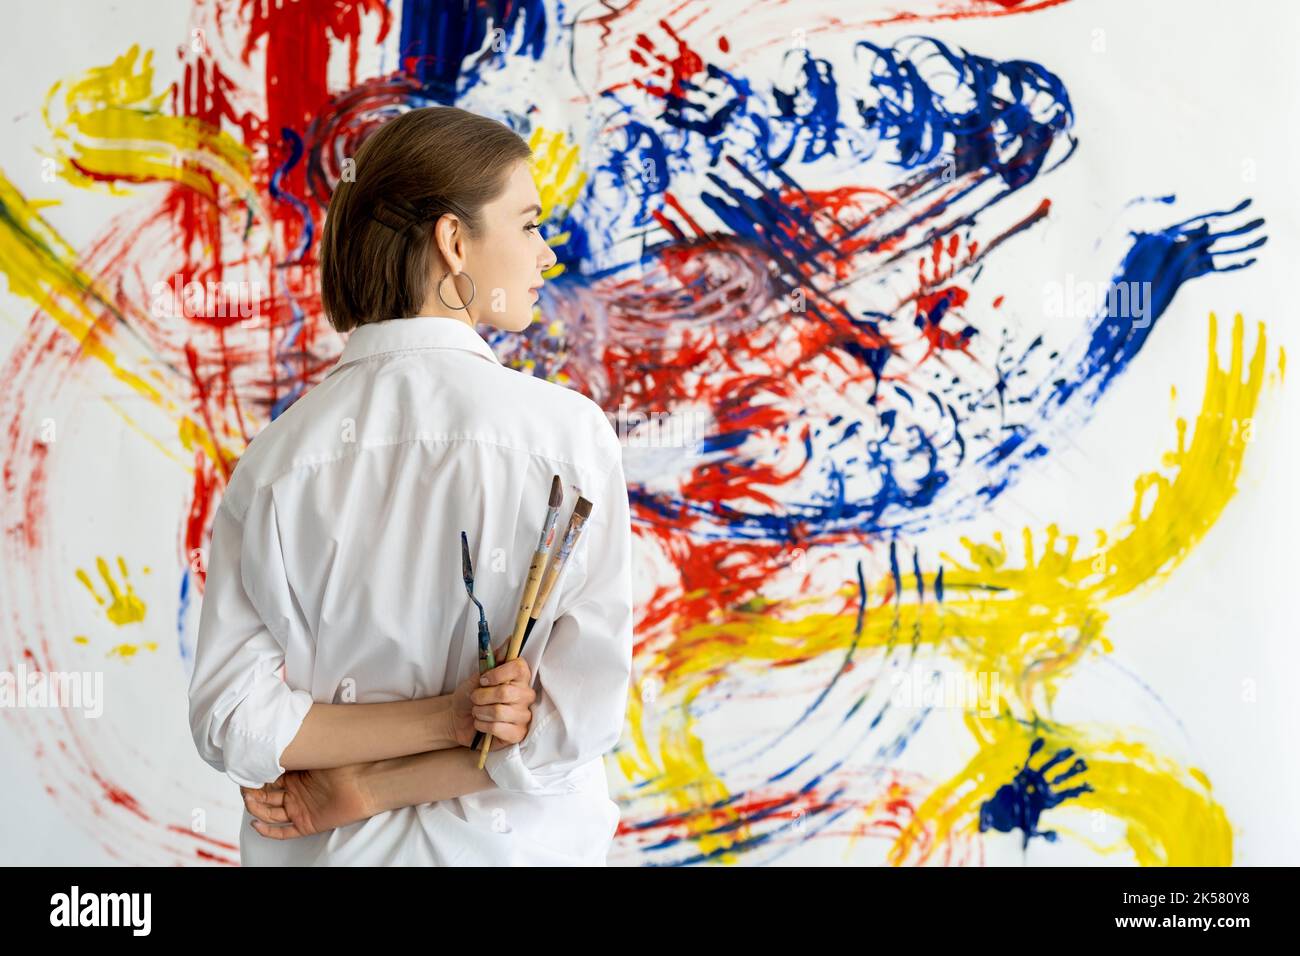 arte terapia pittura a mano donna con parete colorata Foto Stock